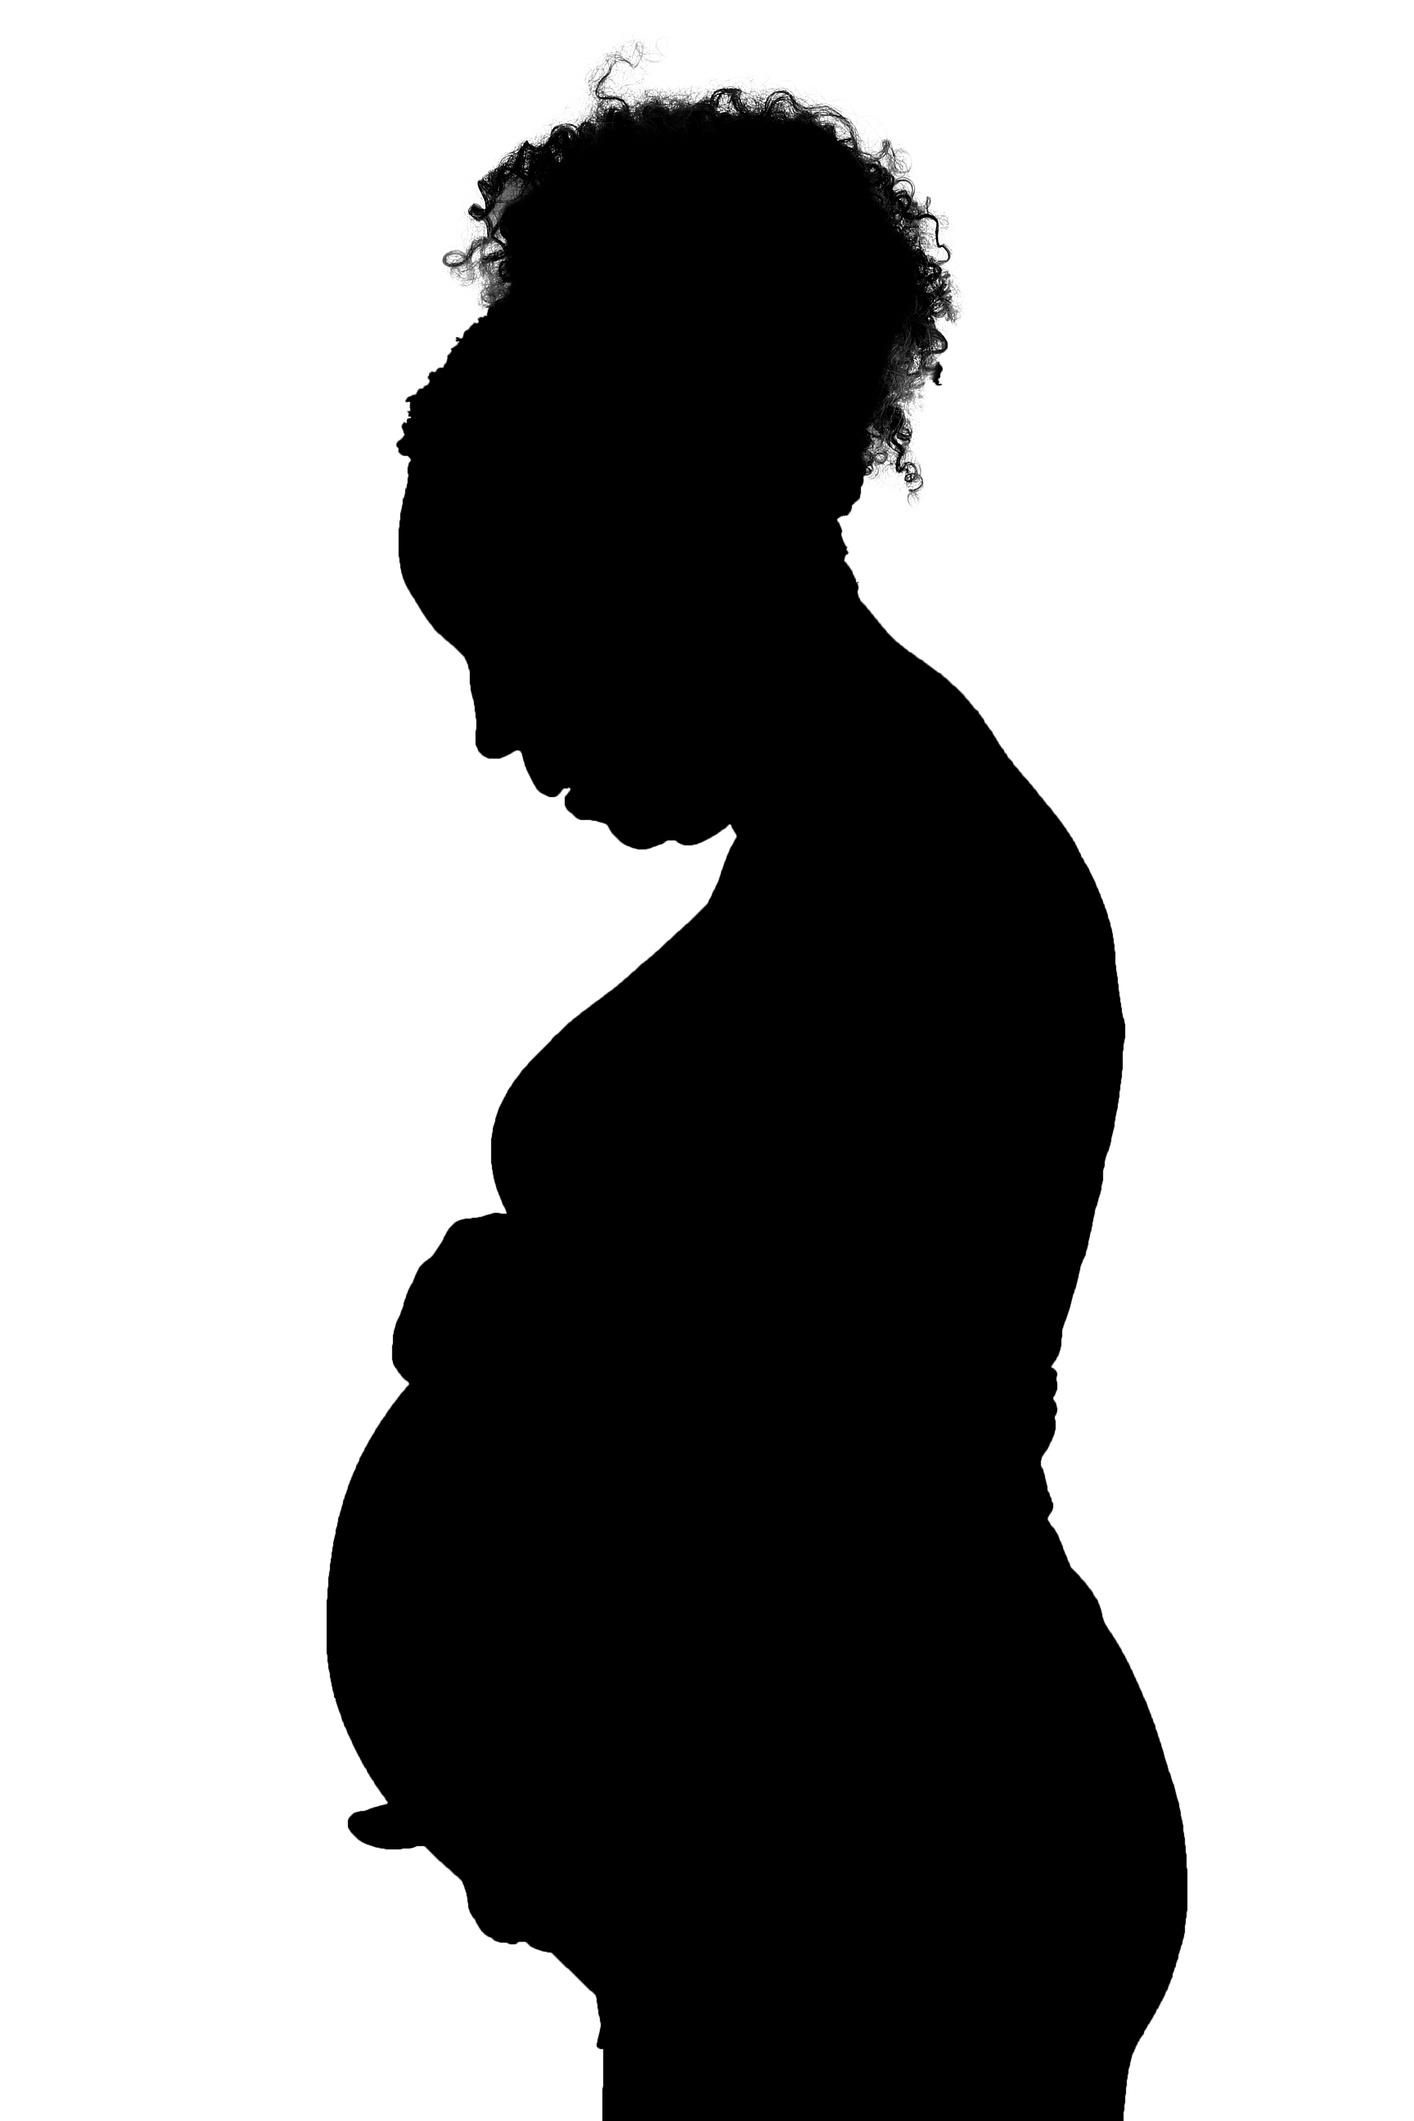 Addressing Racial Disparity in Maternal Health